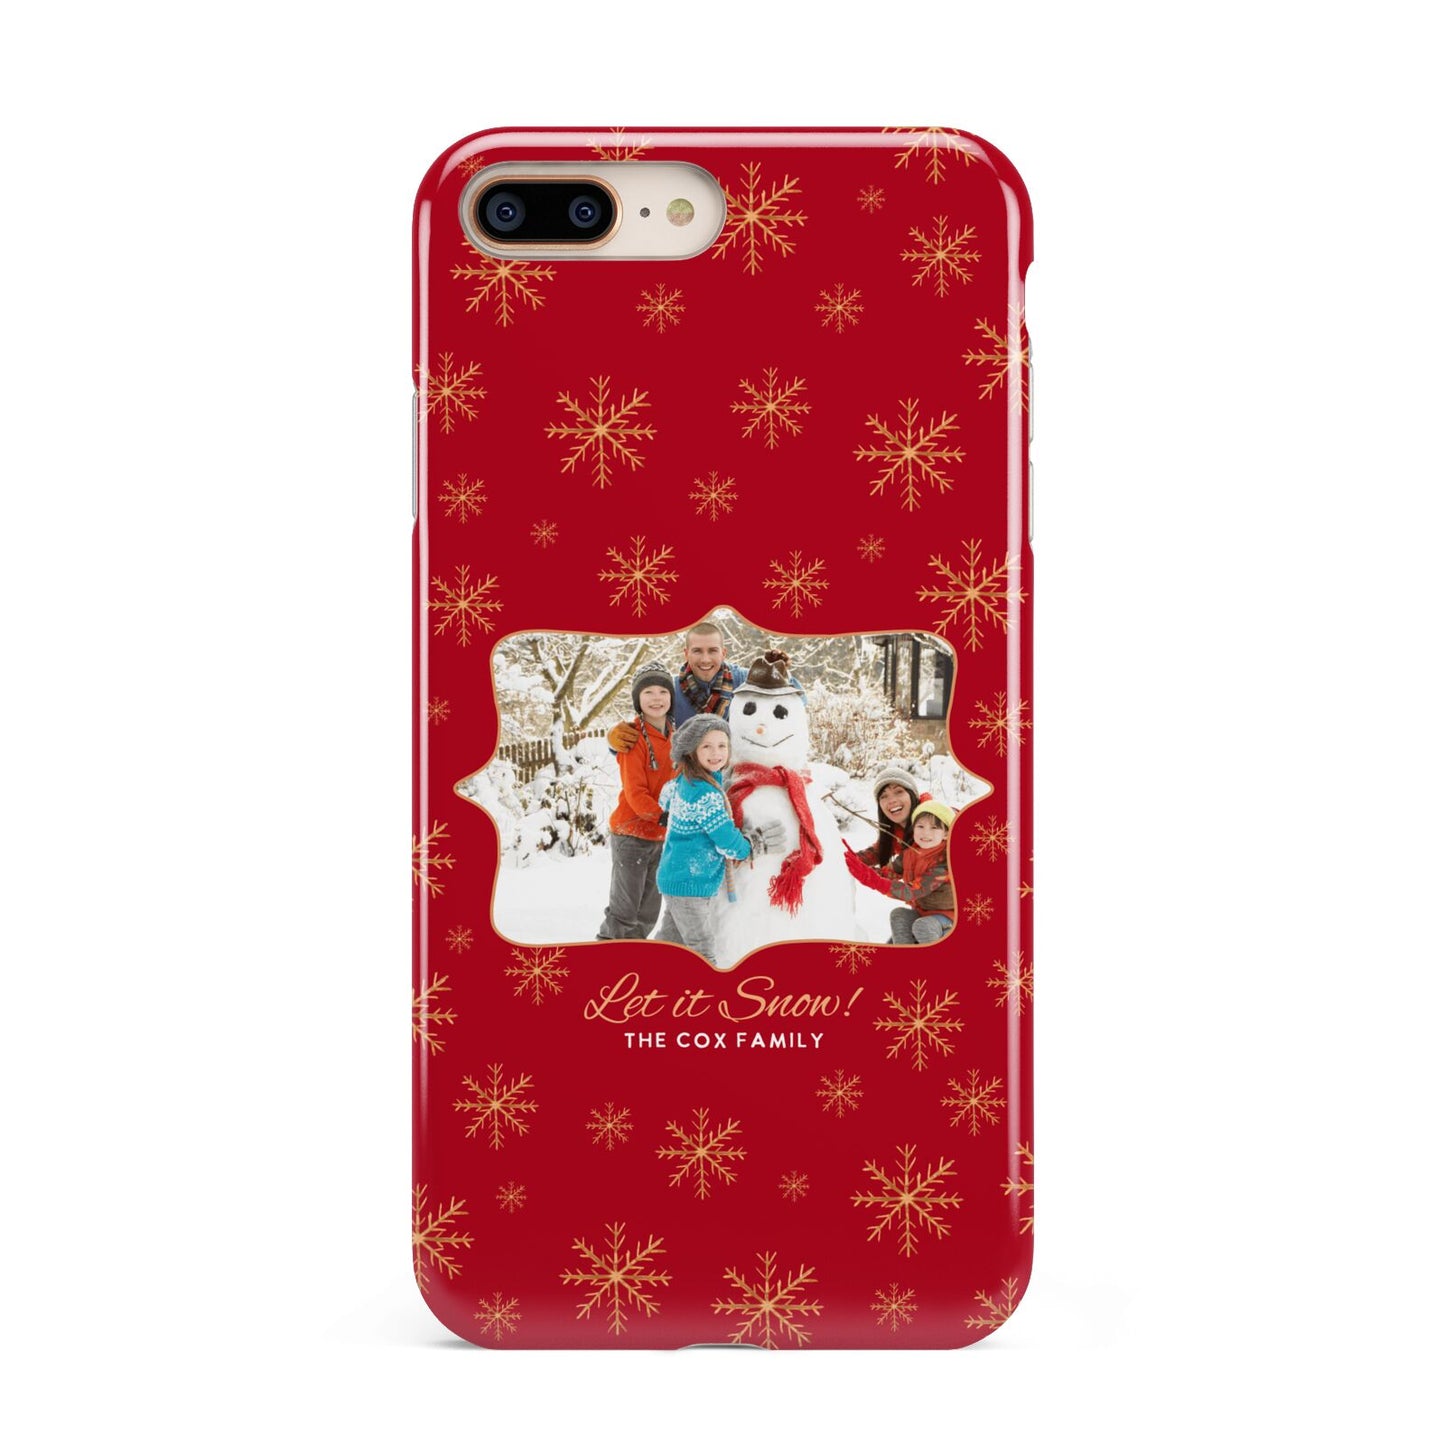 Let it Snow Christmas Photo Upload Apple iPhone 7 8 Plus 3D Tough Case